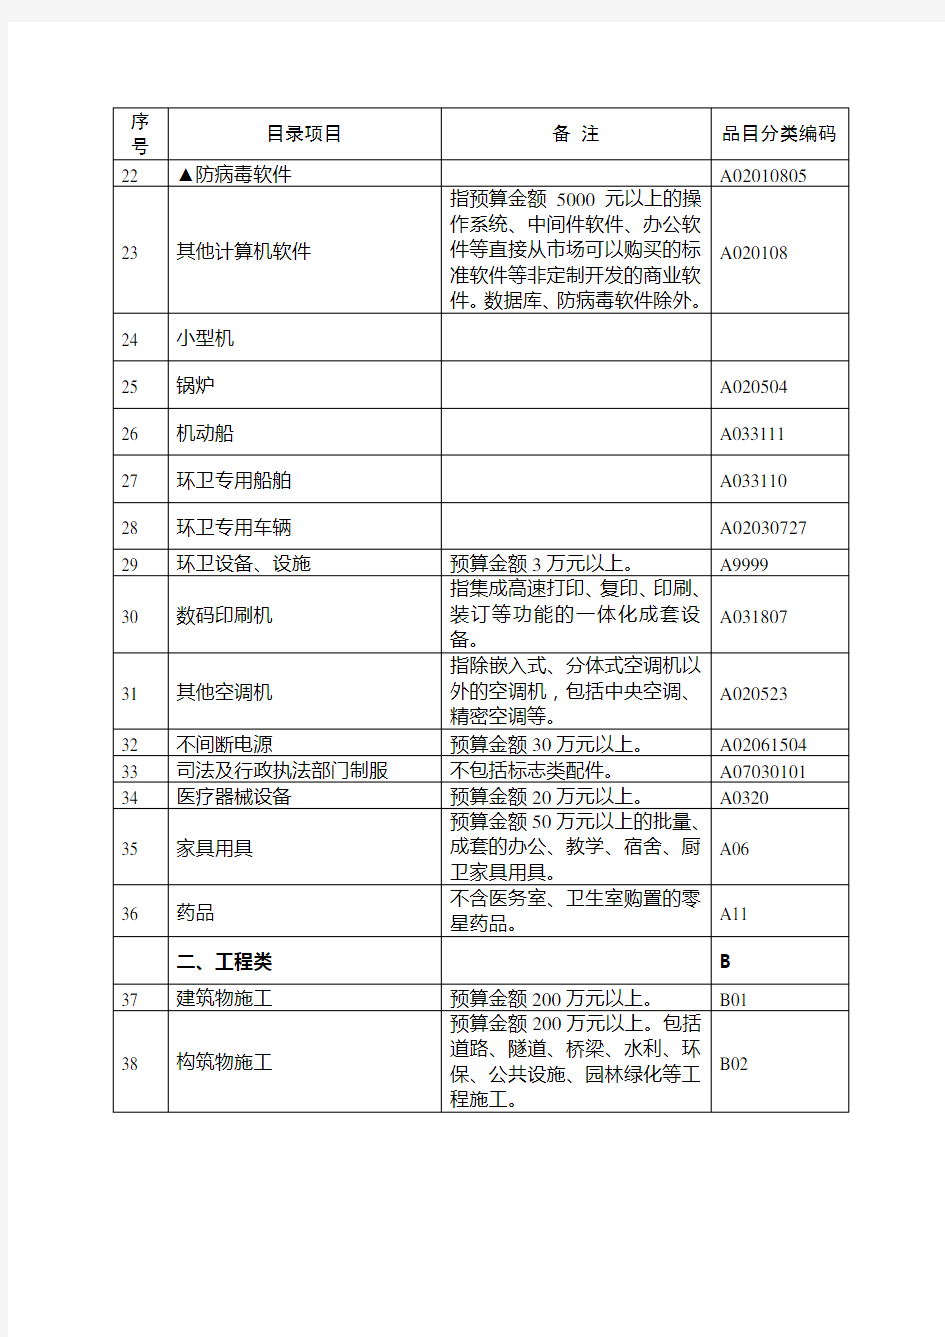 上海市政府采购集中采购目录和采购限额标准